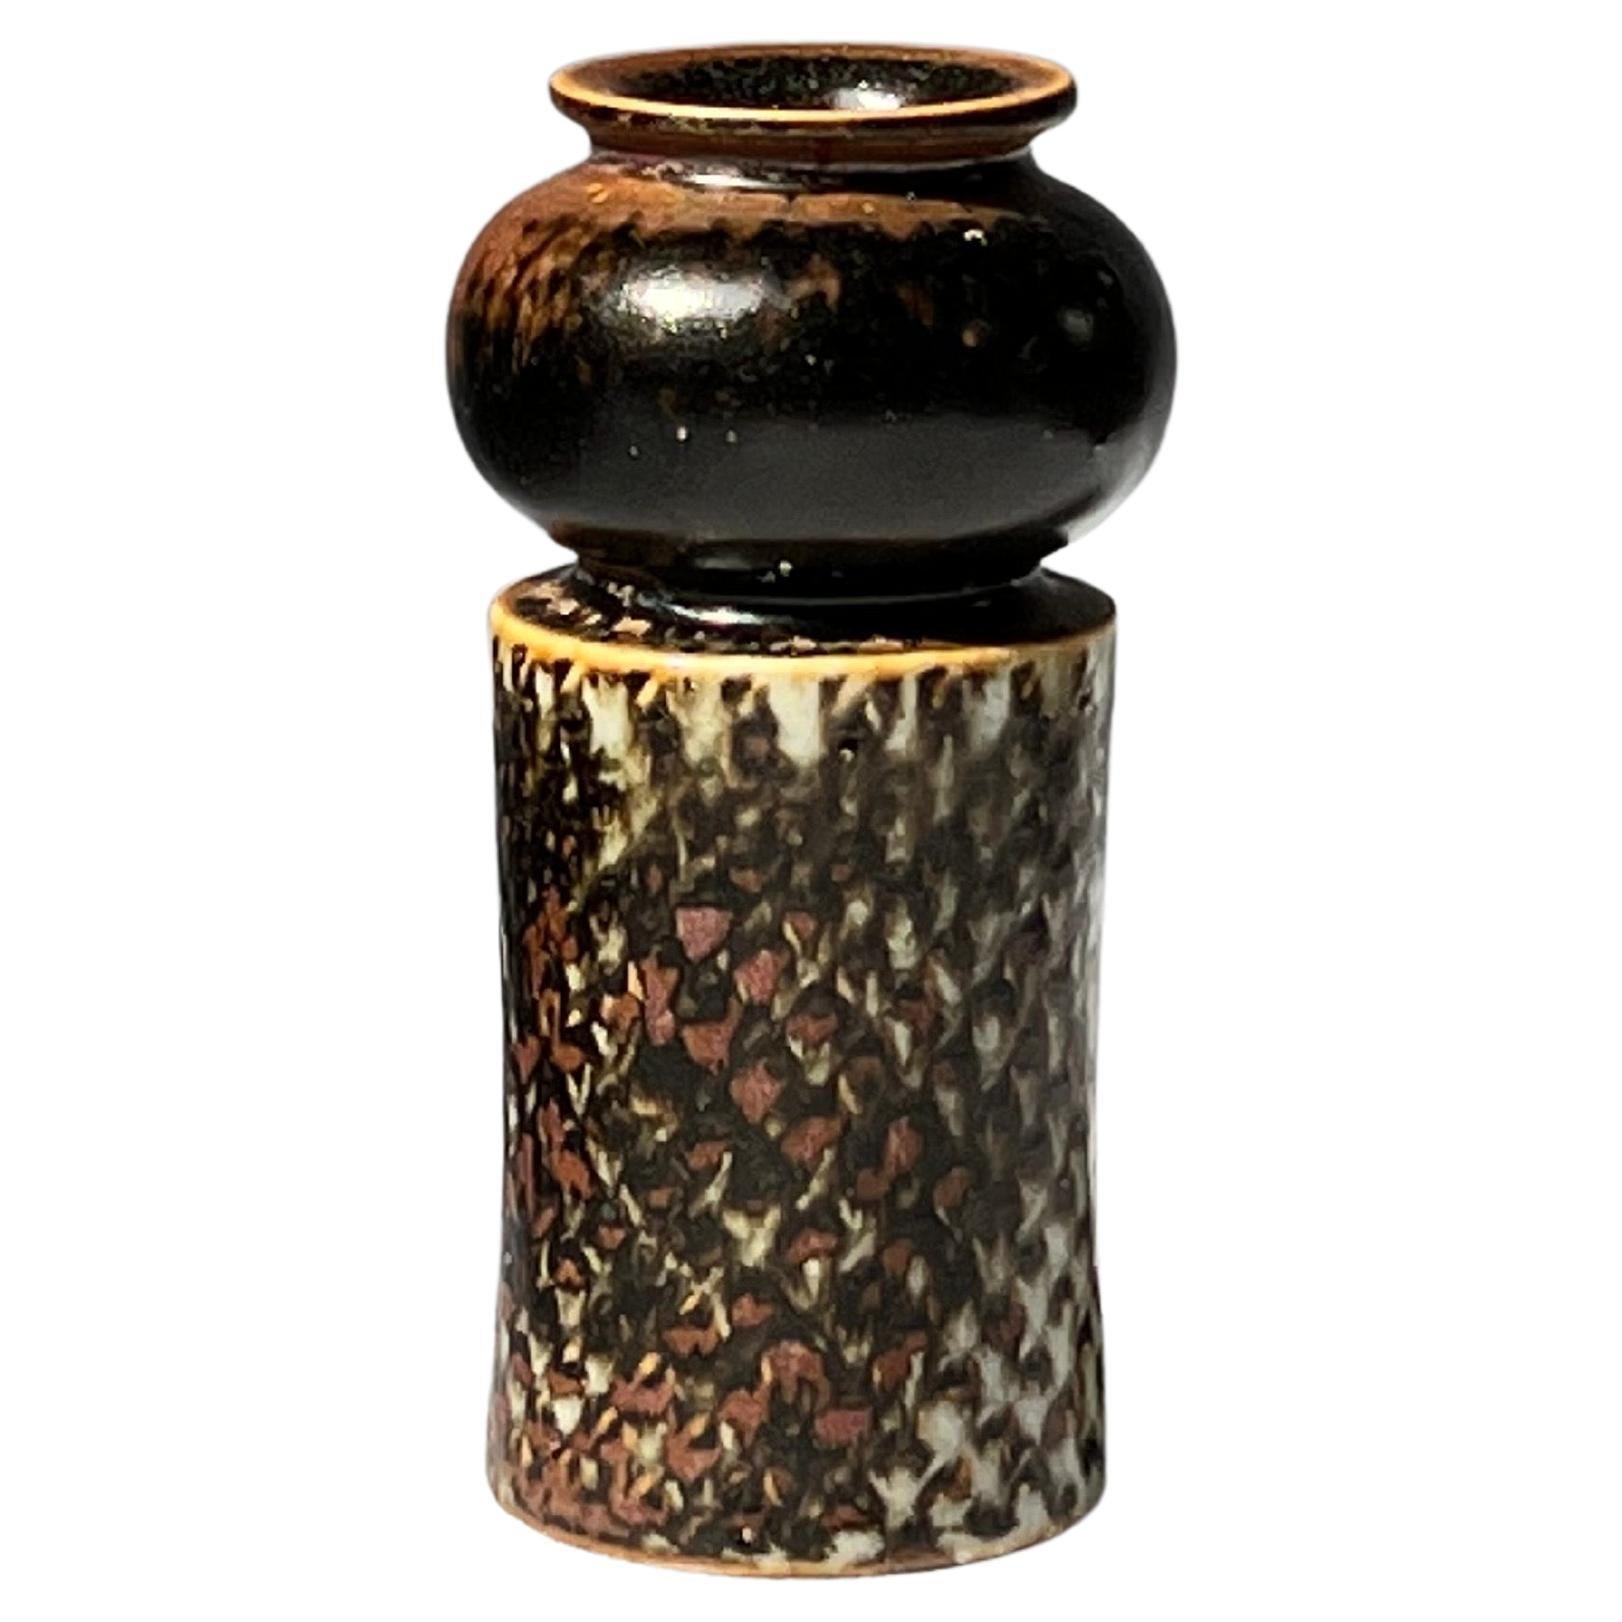 Stig Lindberg Unique Vase in black Glaze Tenmoku Made by Hand Sweden 1964 For Sale